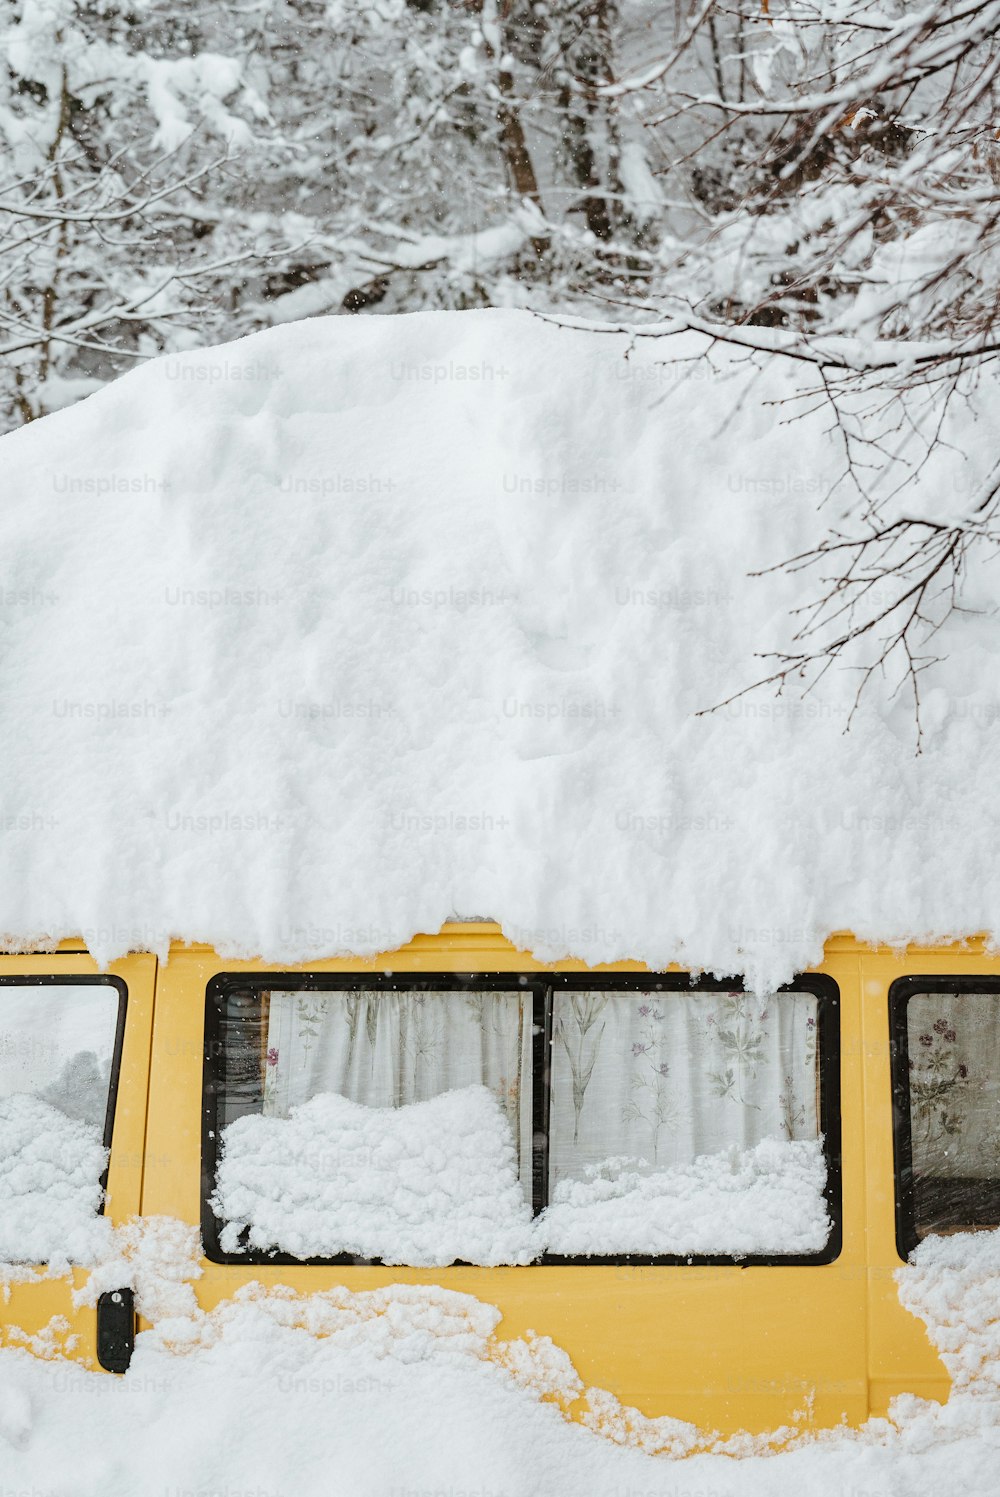 Un autobús amarillo cubierto de nieve junto a los árboles